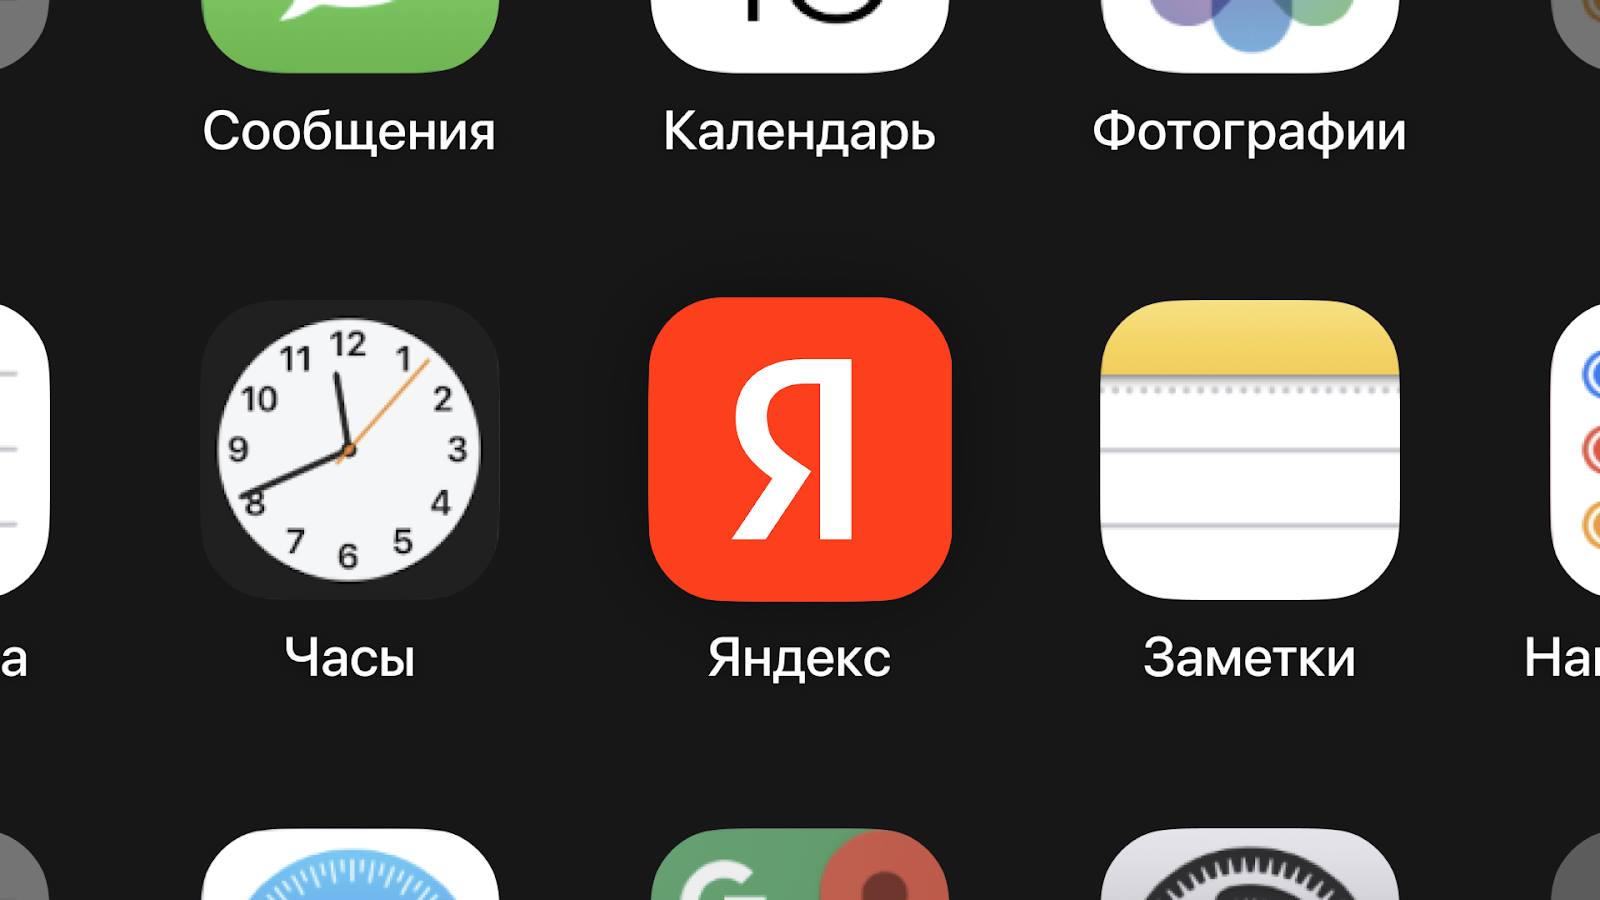 Яндекс тестирует рекламные баннеры в результатах поиска на смартфонах. Они огромные